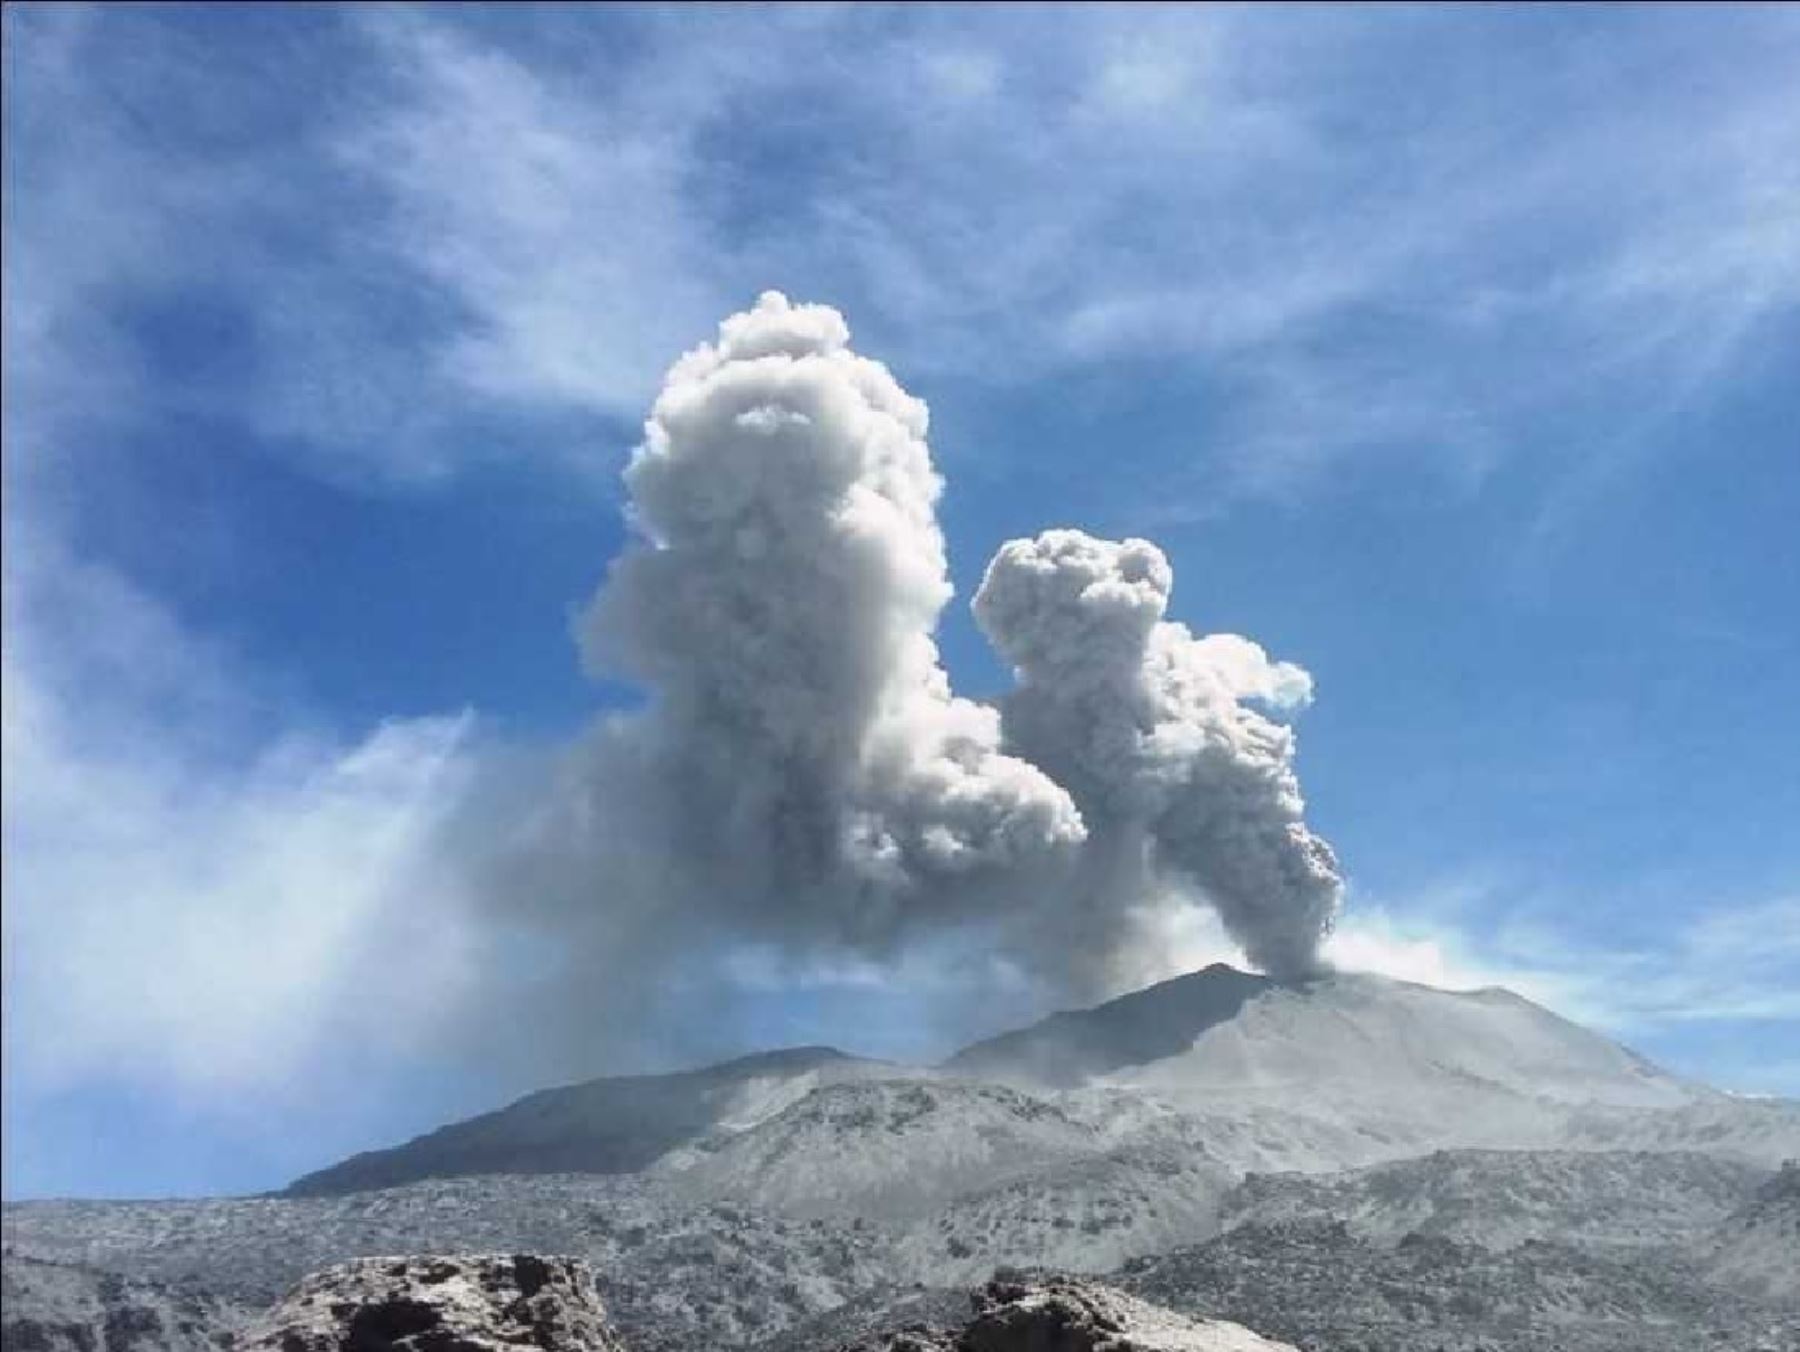 El Instituto Geofísico del Perú (IGPP) alertó la caída de cenizas en el volcán Sabancaya, ubicado en la región Arequipa, condición que se mantendría durante todo el día. ANDINA/Difusión